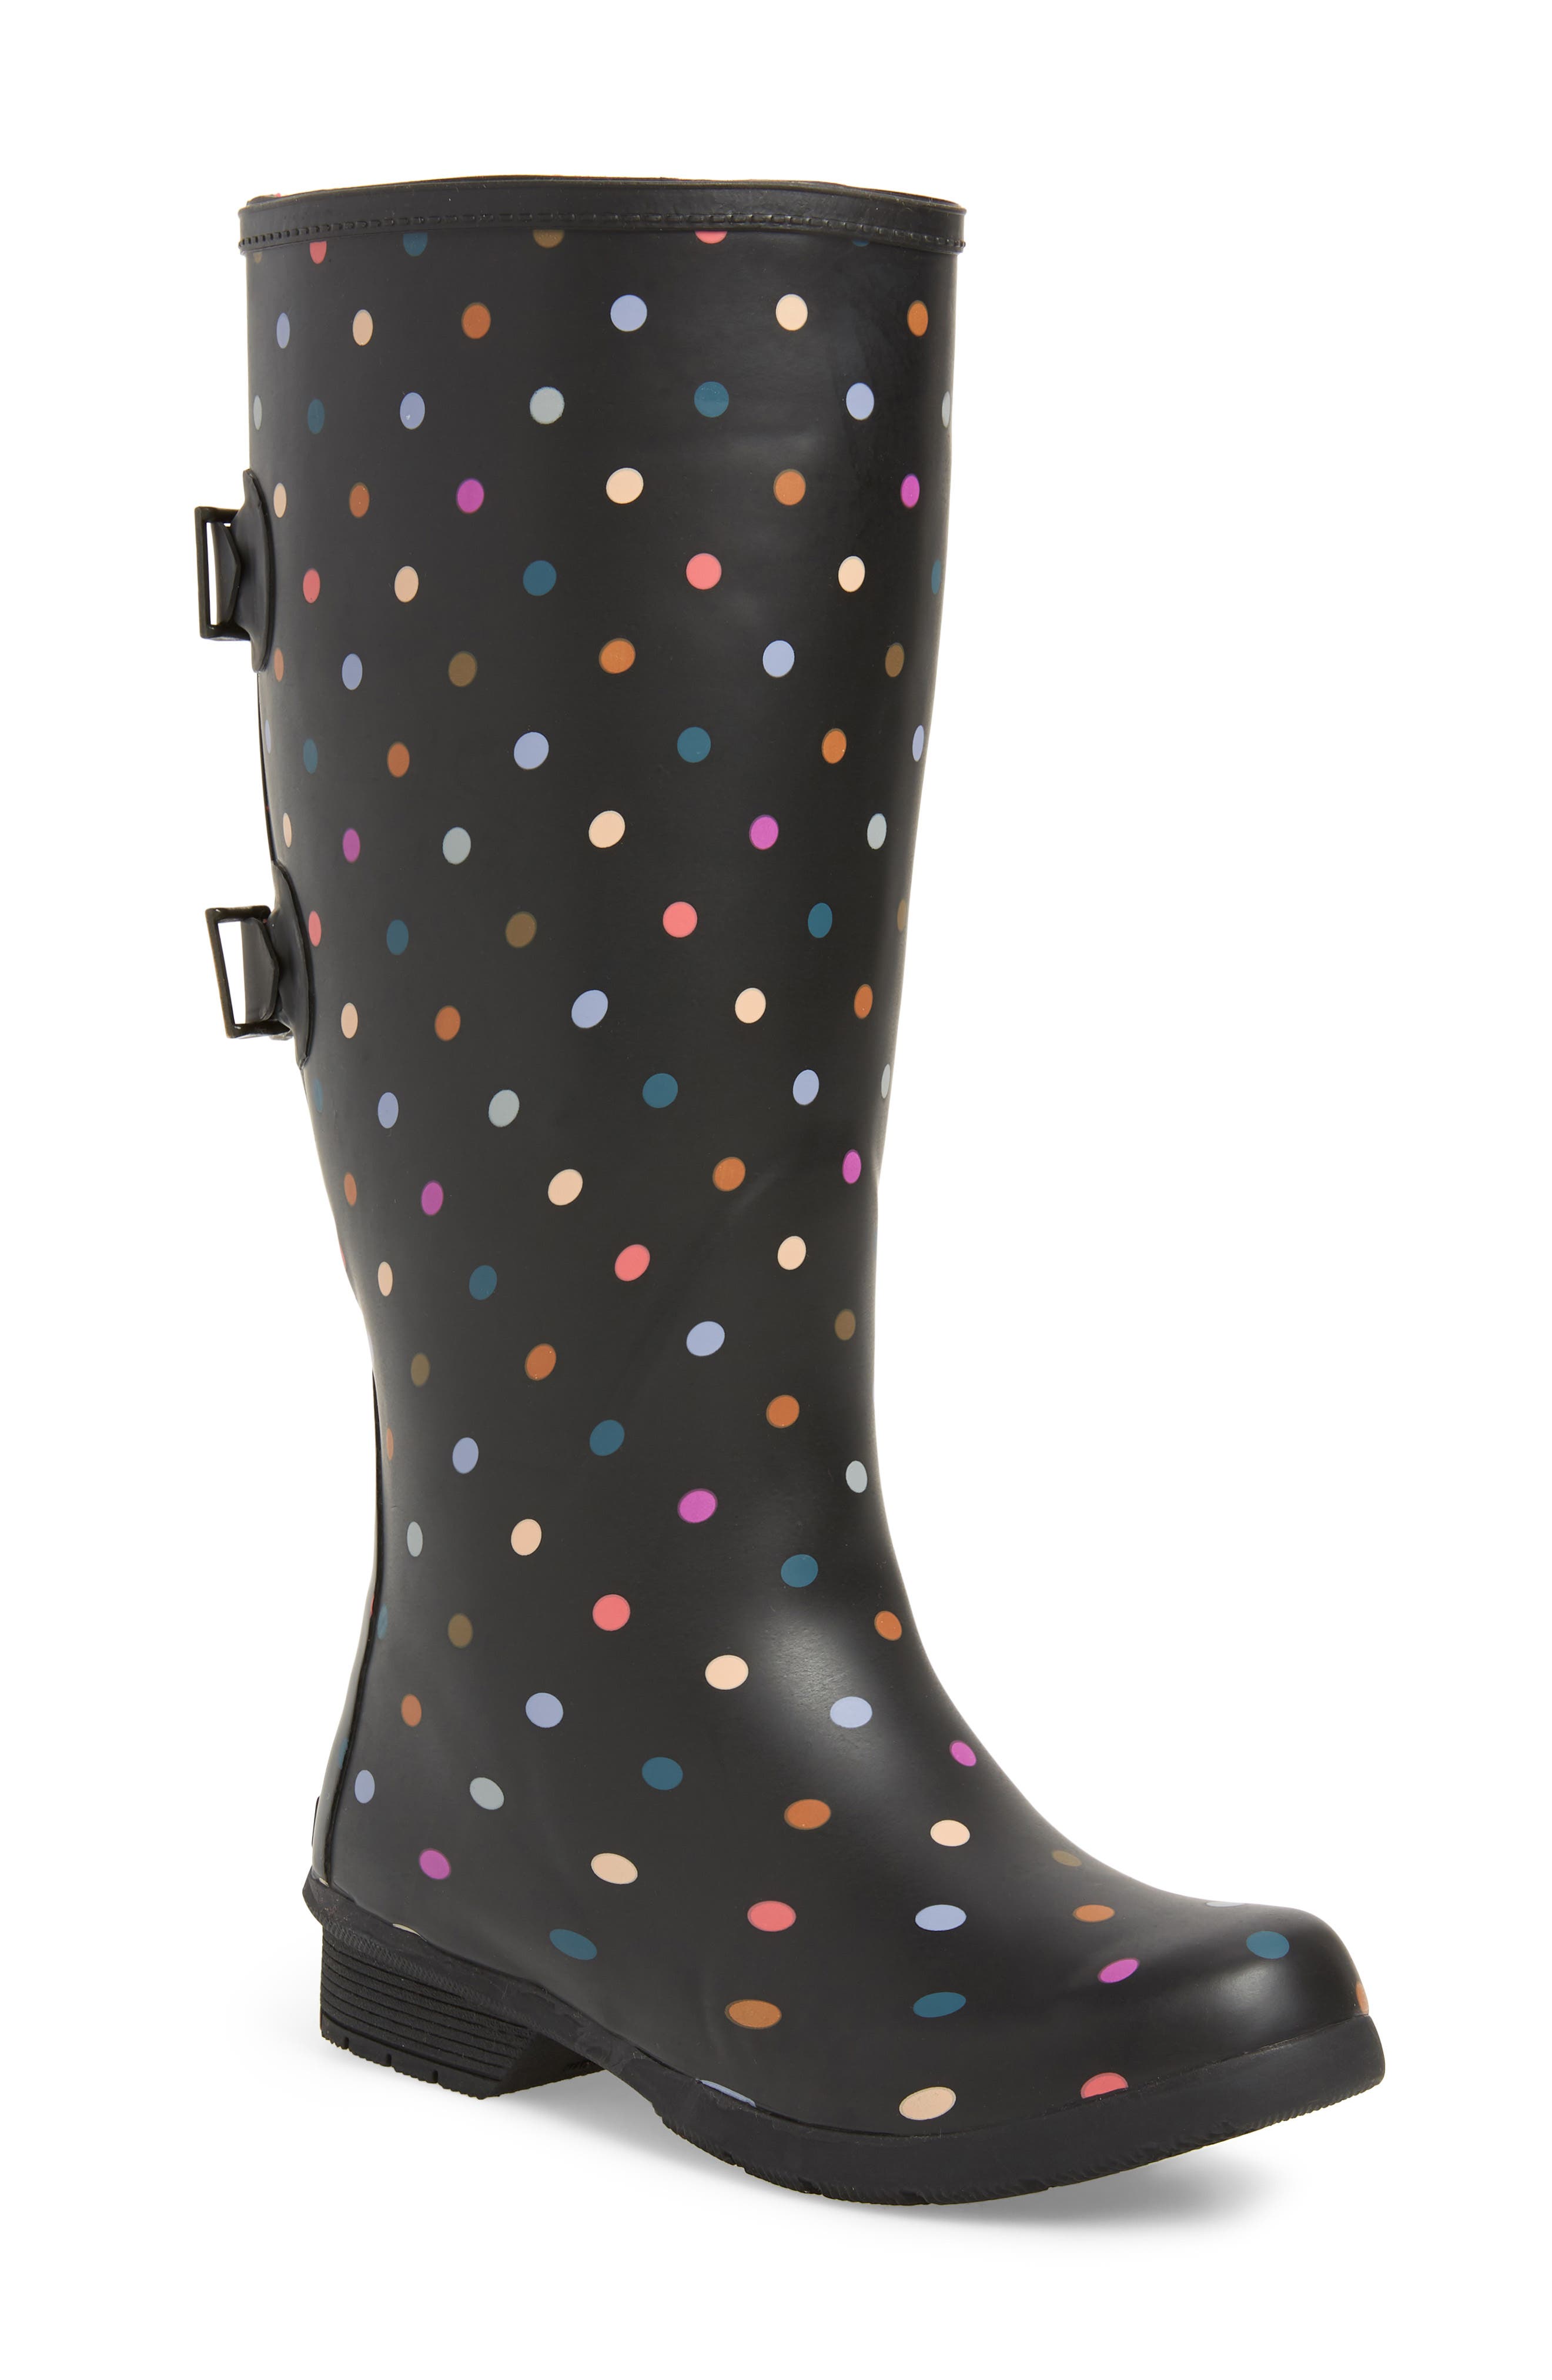 black and white polka dot rain boots